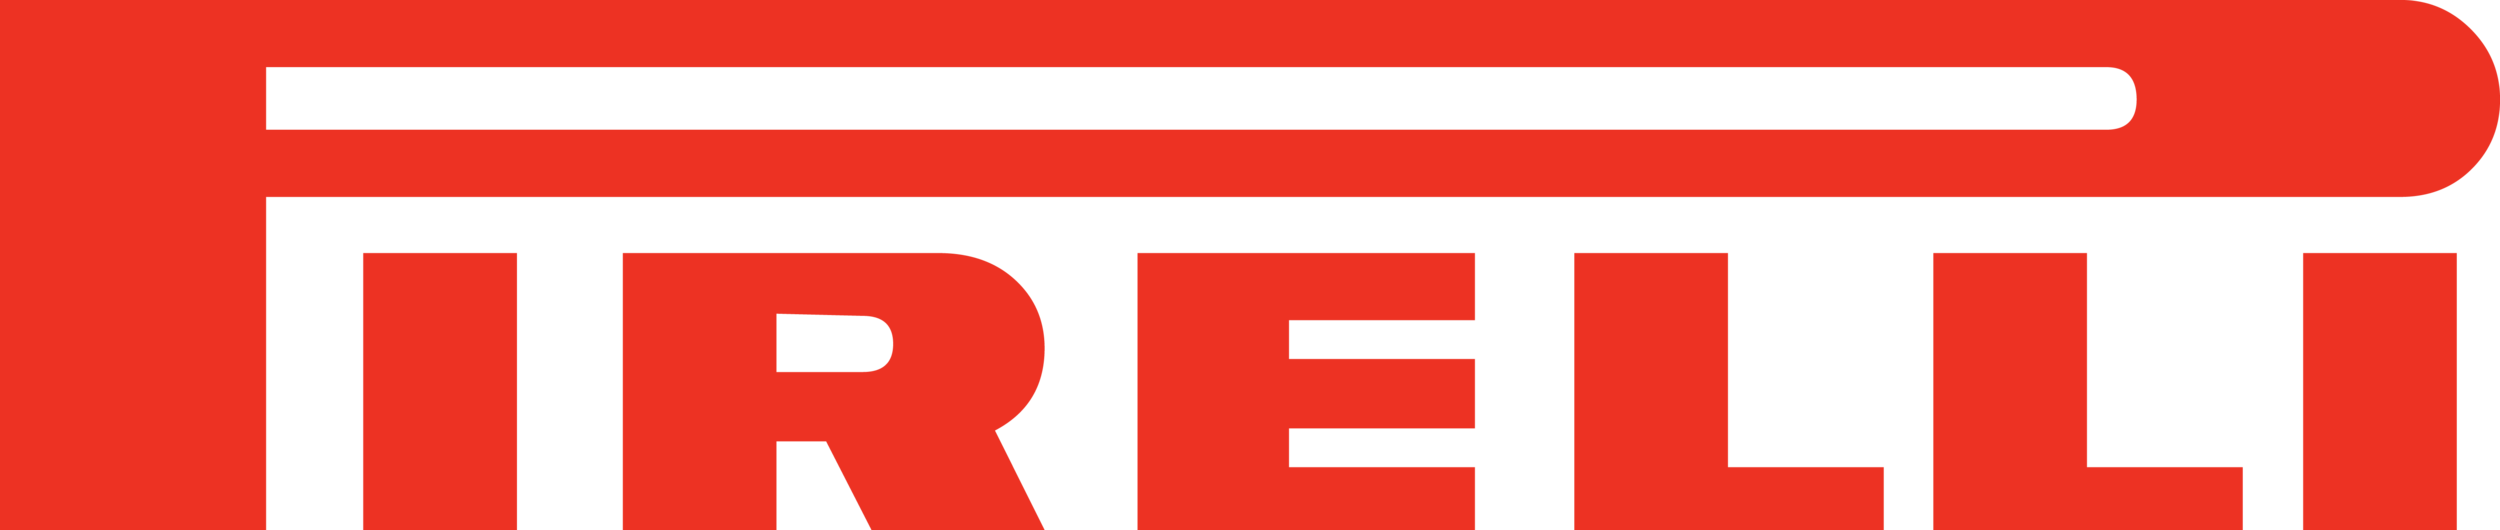 Pirelli_logo.png